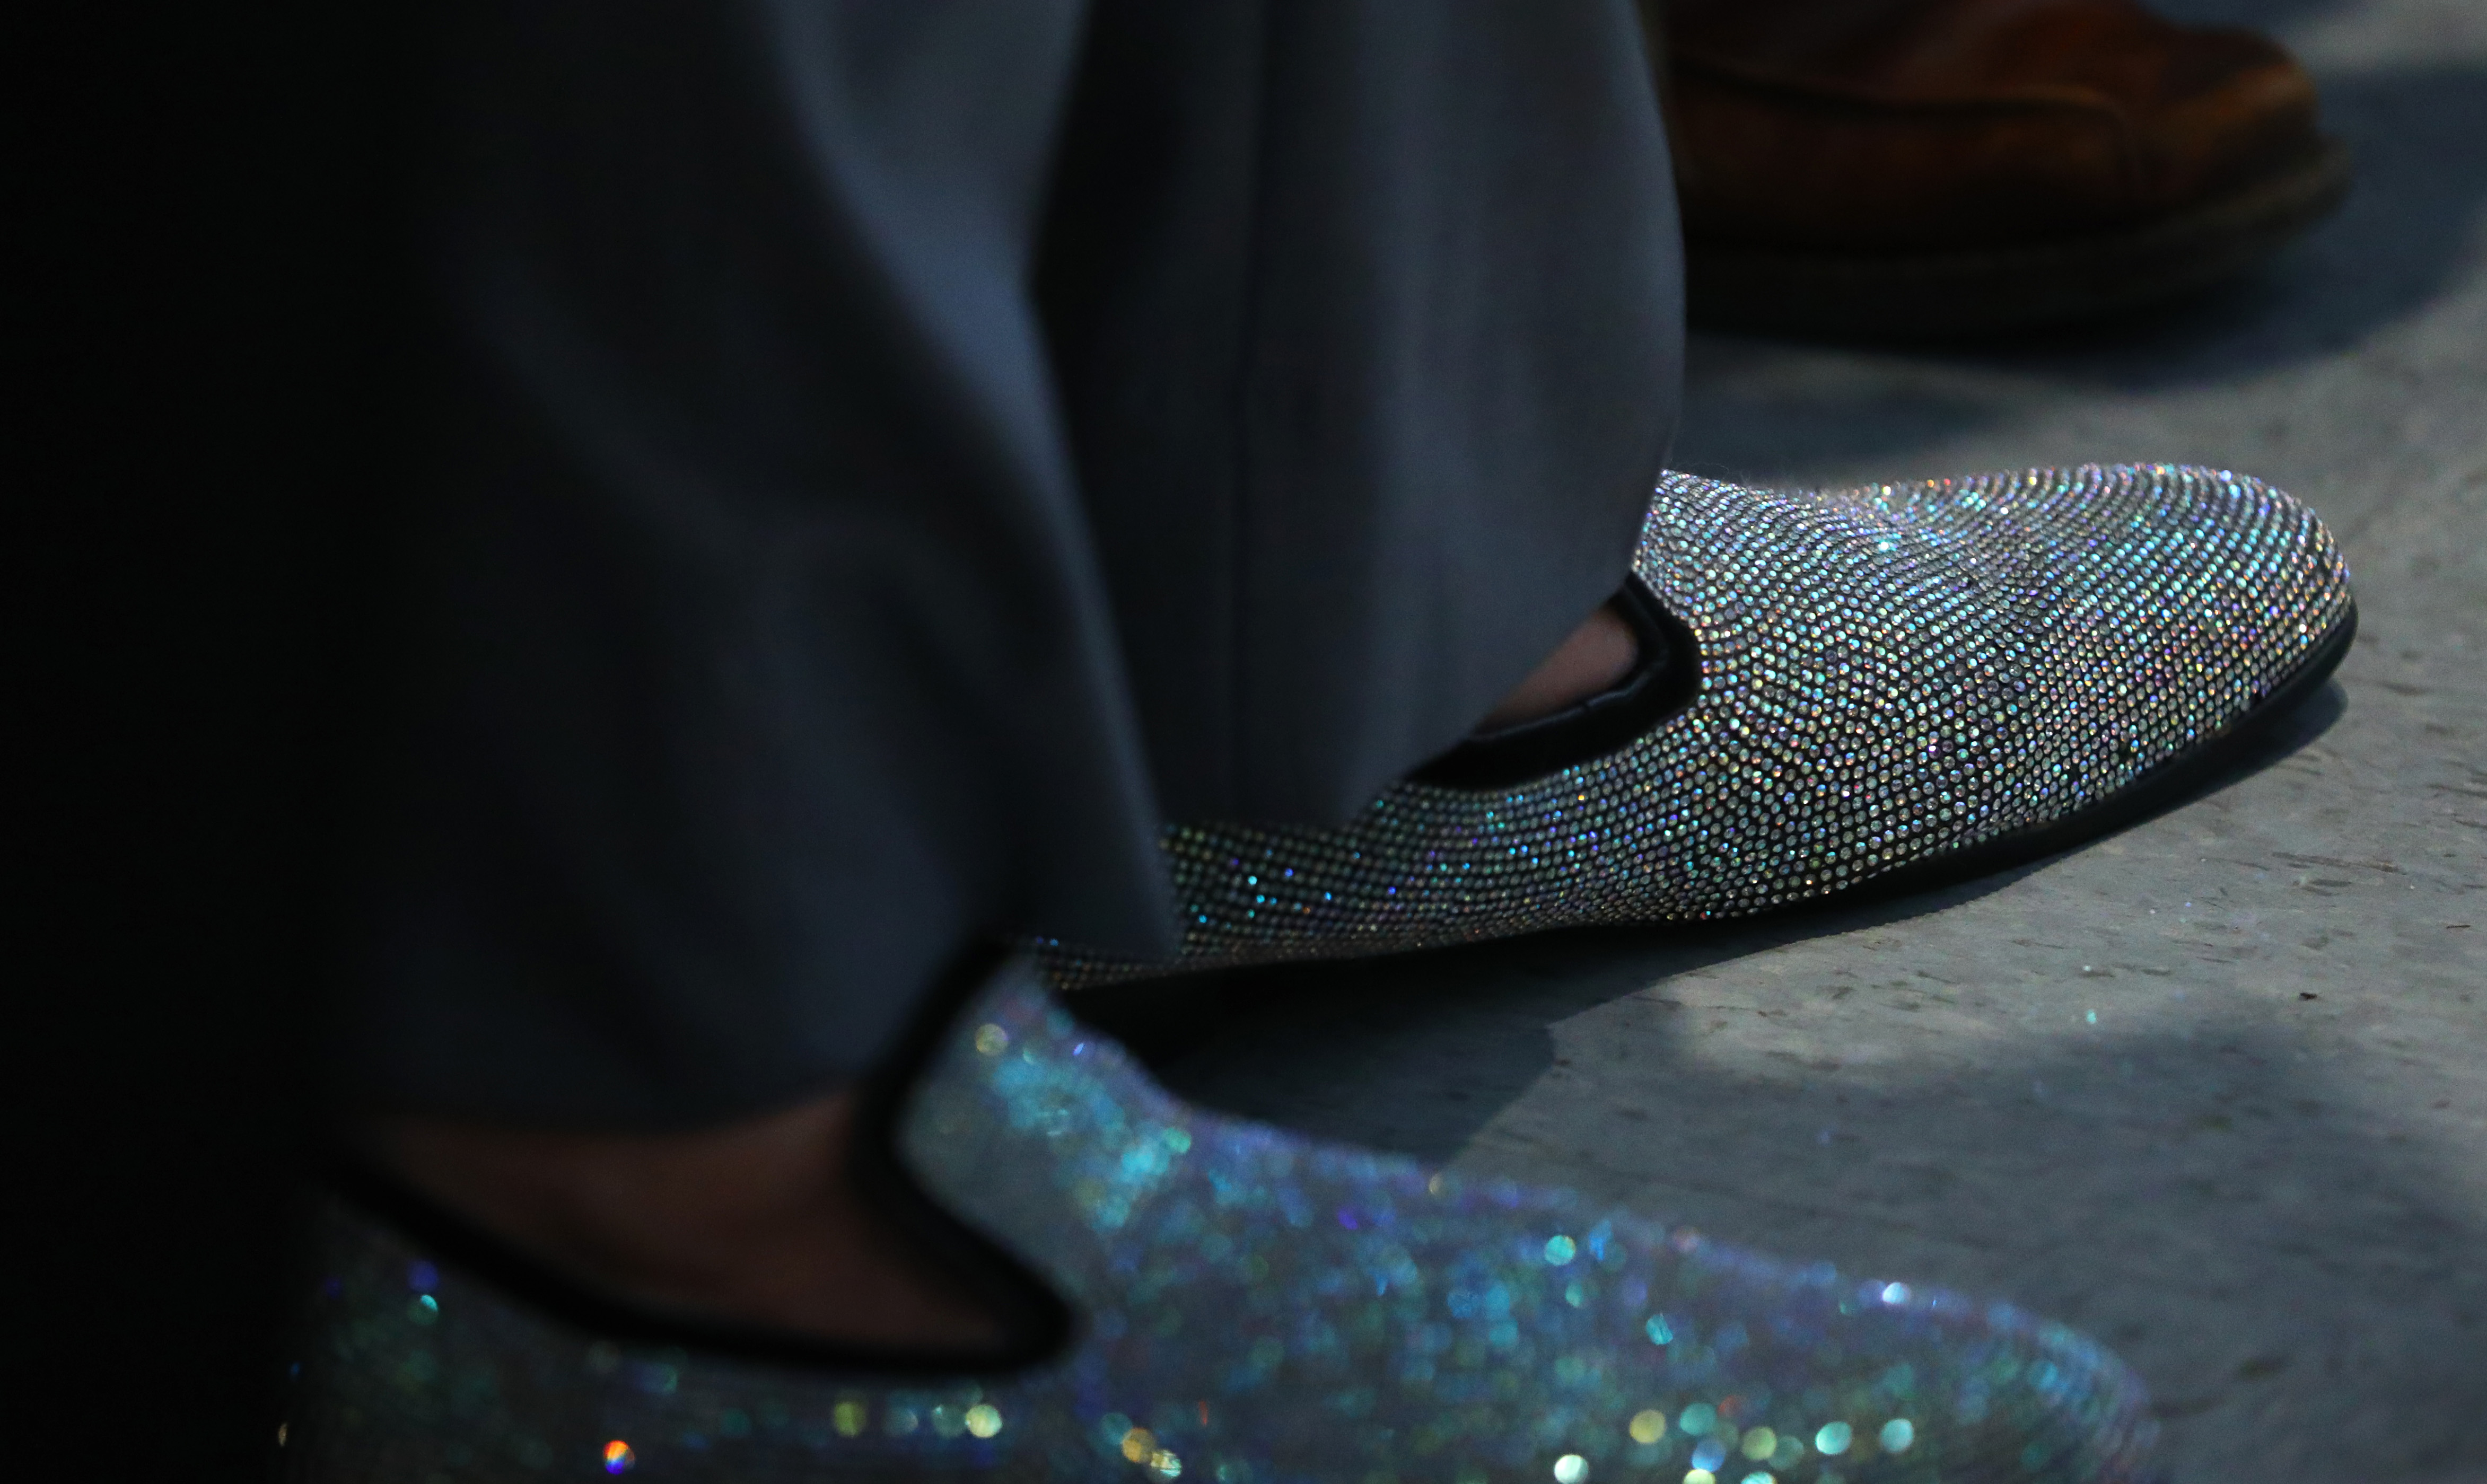 Tenor Michael Gonzalez wore sparkly shoes.